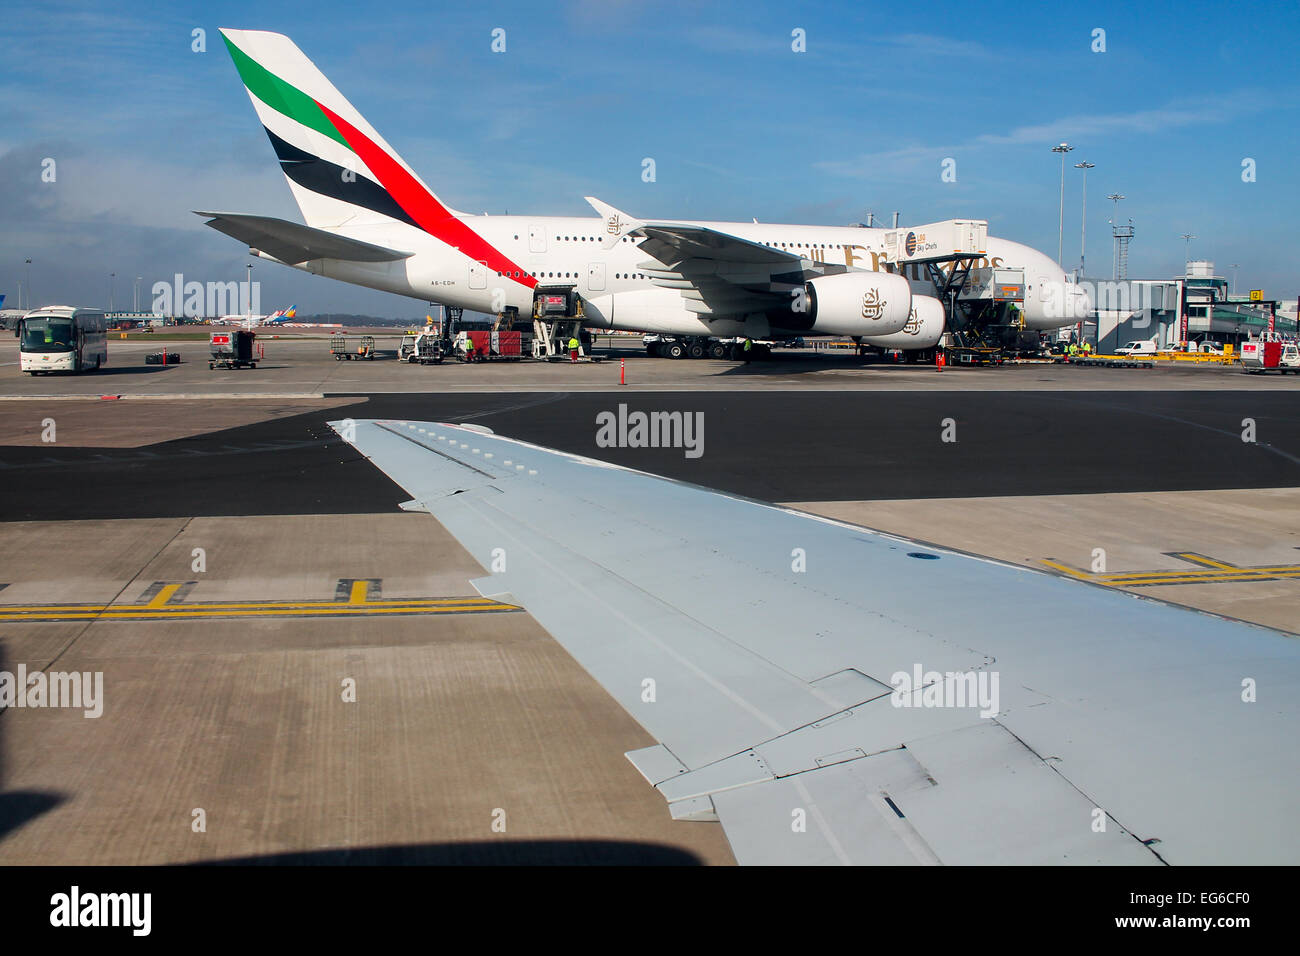 Bmi Regional Embraer 145 taxis pasado un Airbus A380 de Emirates en el aeropuerto de Manchester. Foto de stock